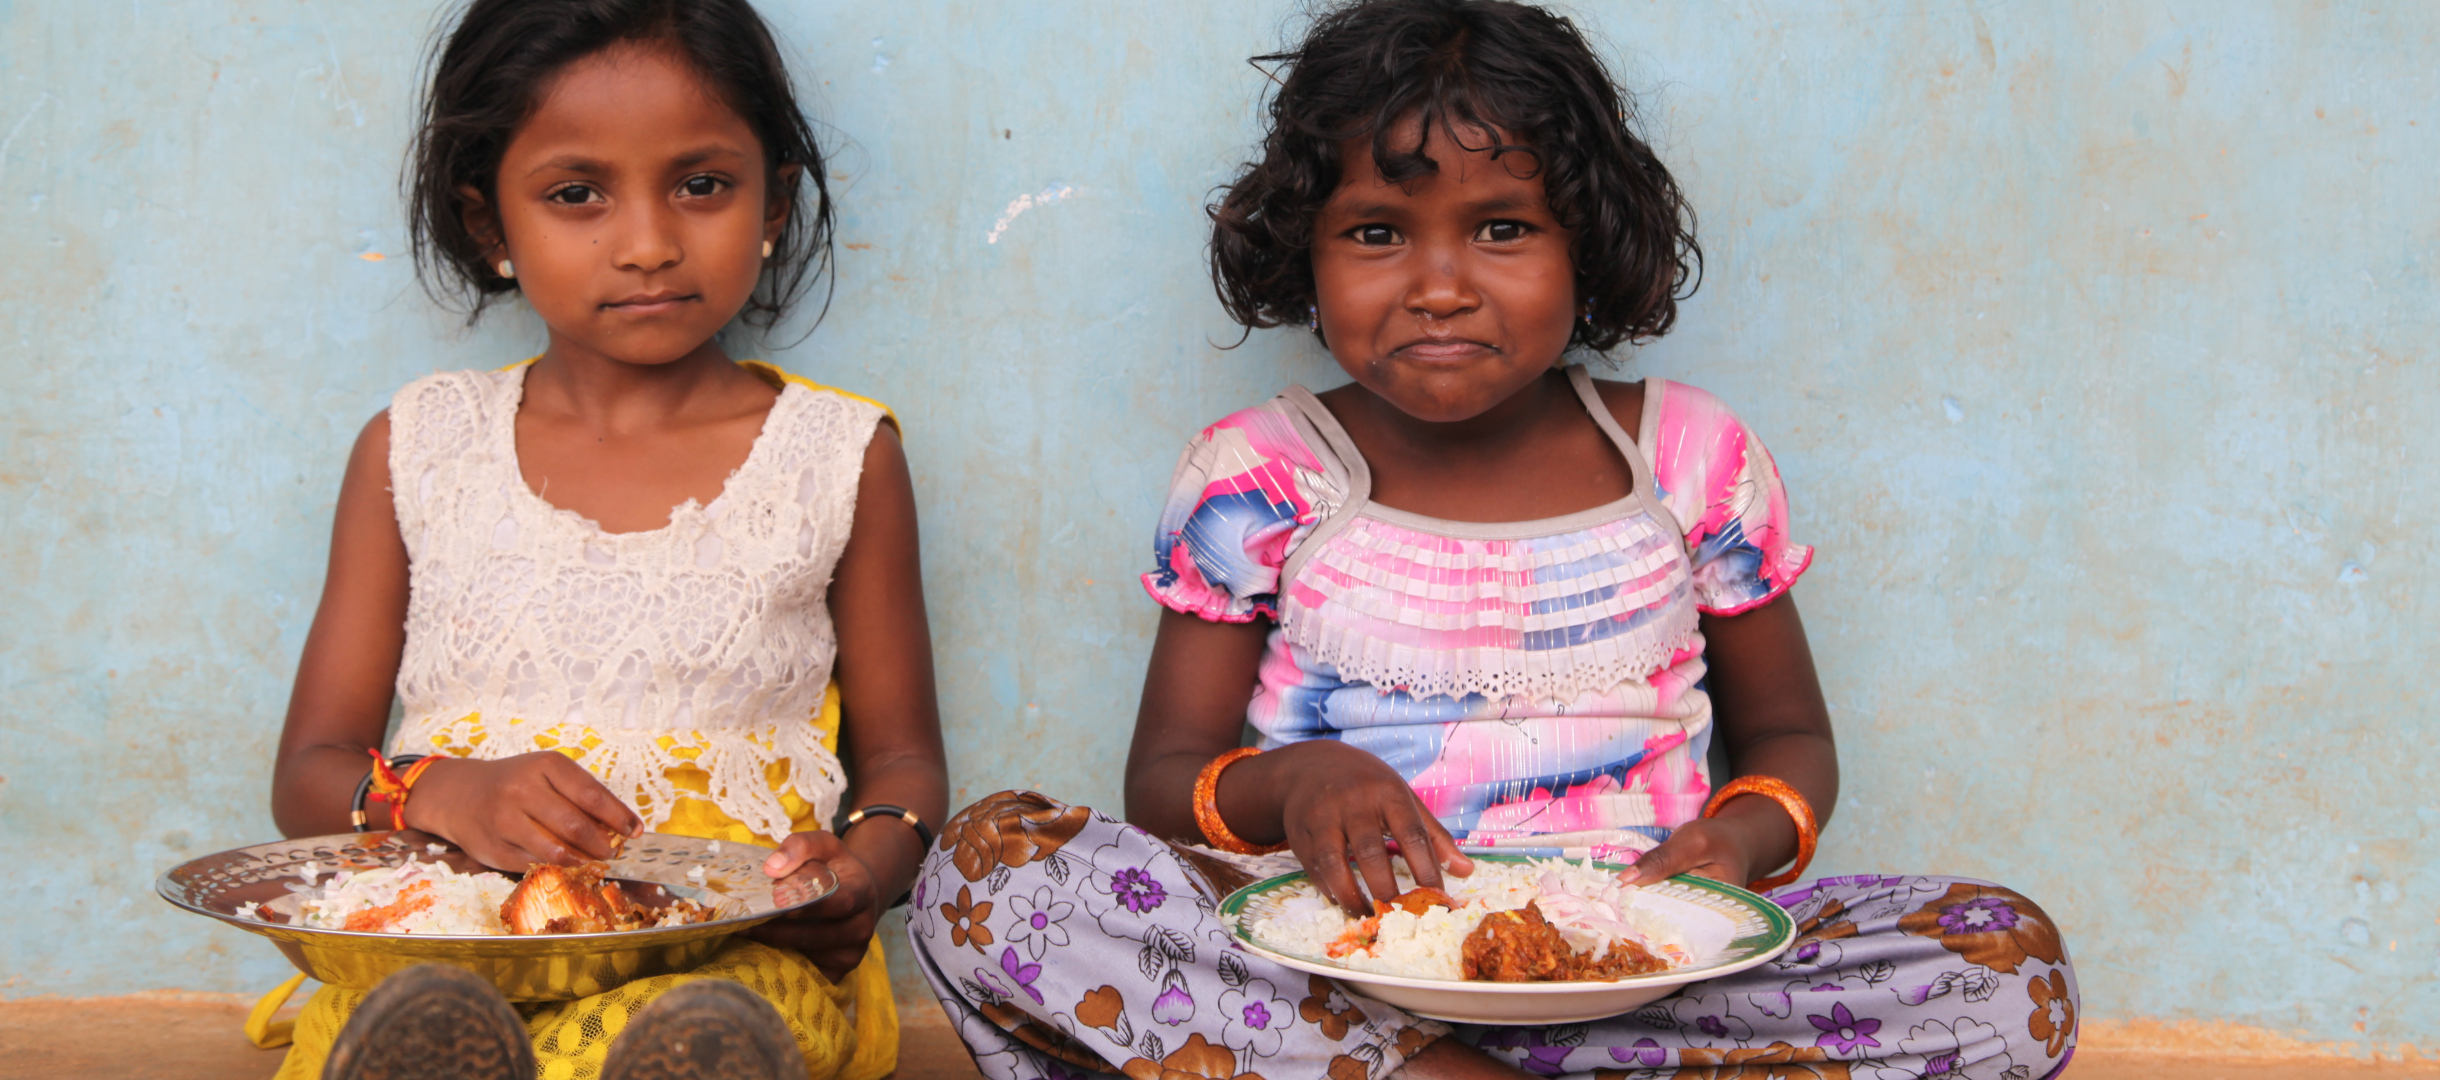 Zwei Mädchen in Indien bei einer Mahlzeit mit Reis